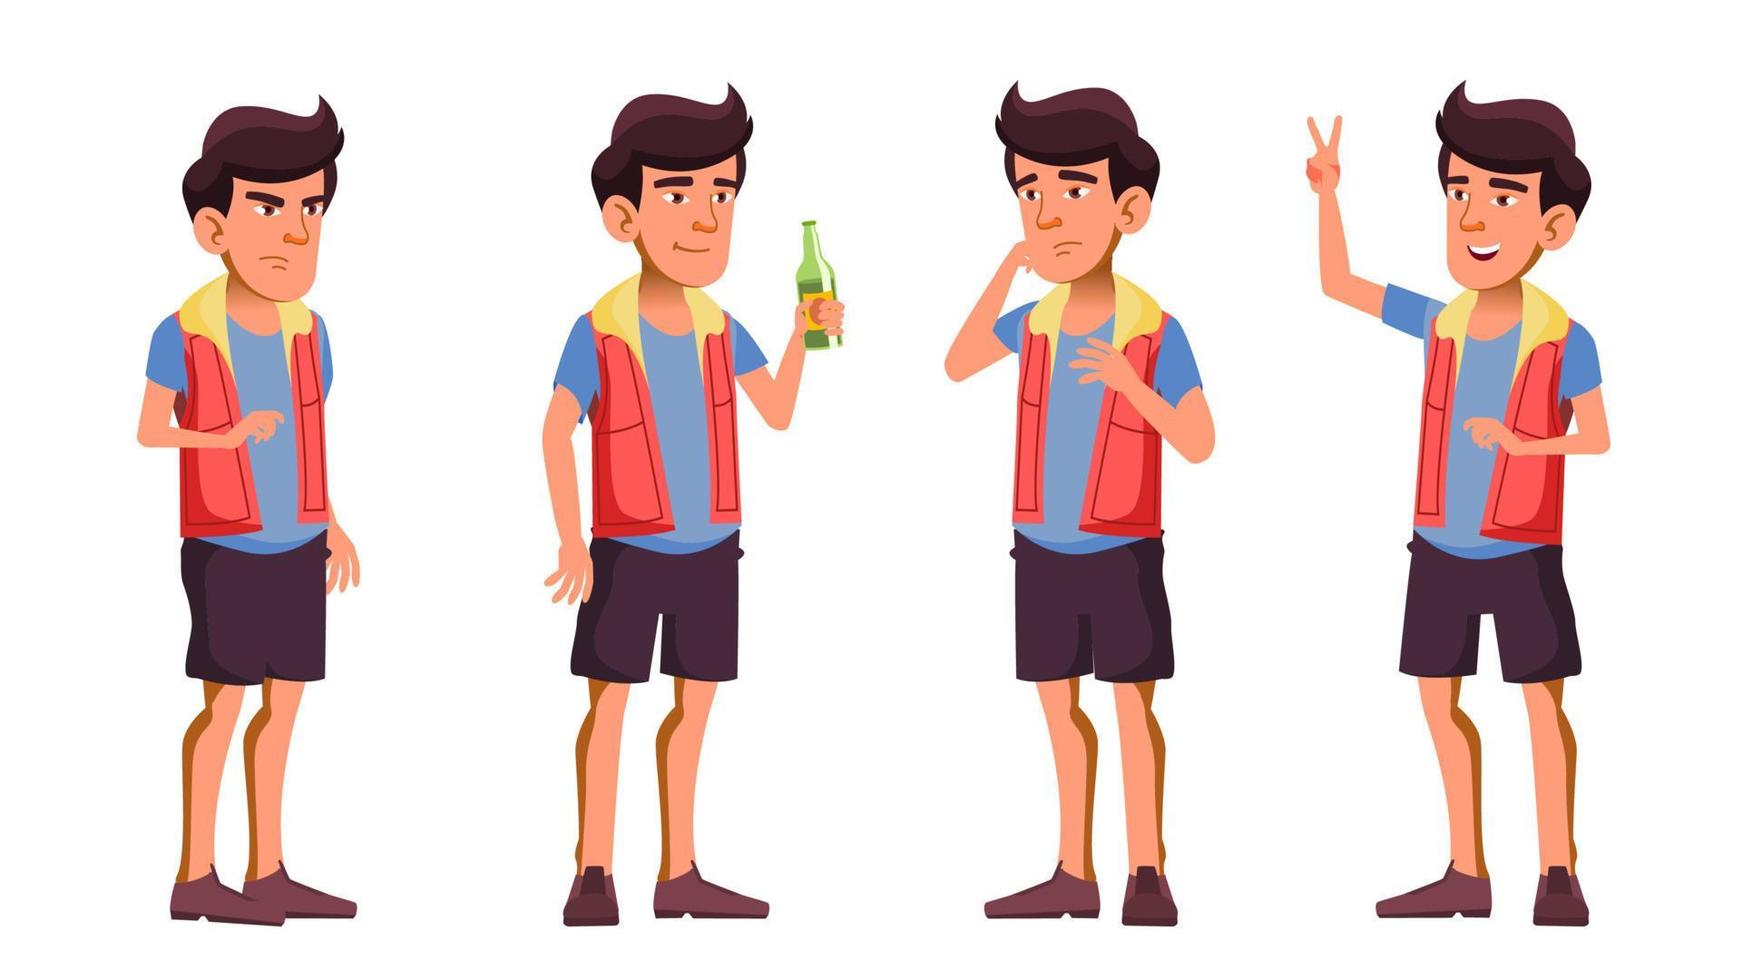 asiatischer jugendlich Junge stellt eingestellten Vektor dar. Bier. hallo. lustig, freundschaft. für werbung, gruß, ankündigungsdesign. isolierte karikaturillustration